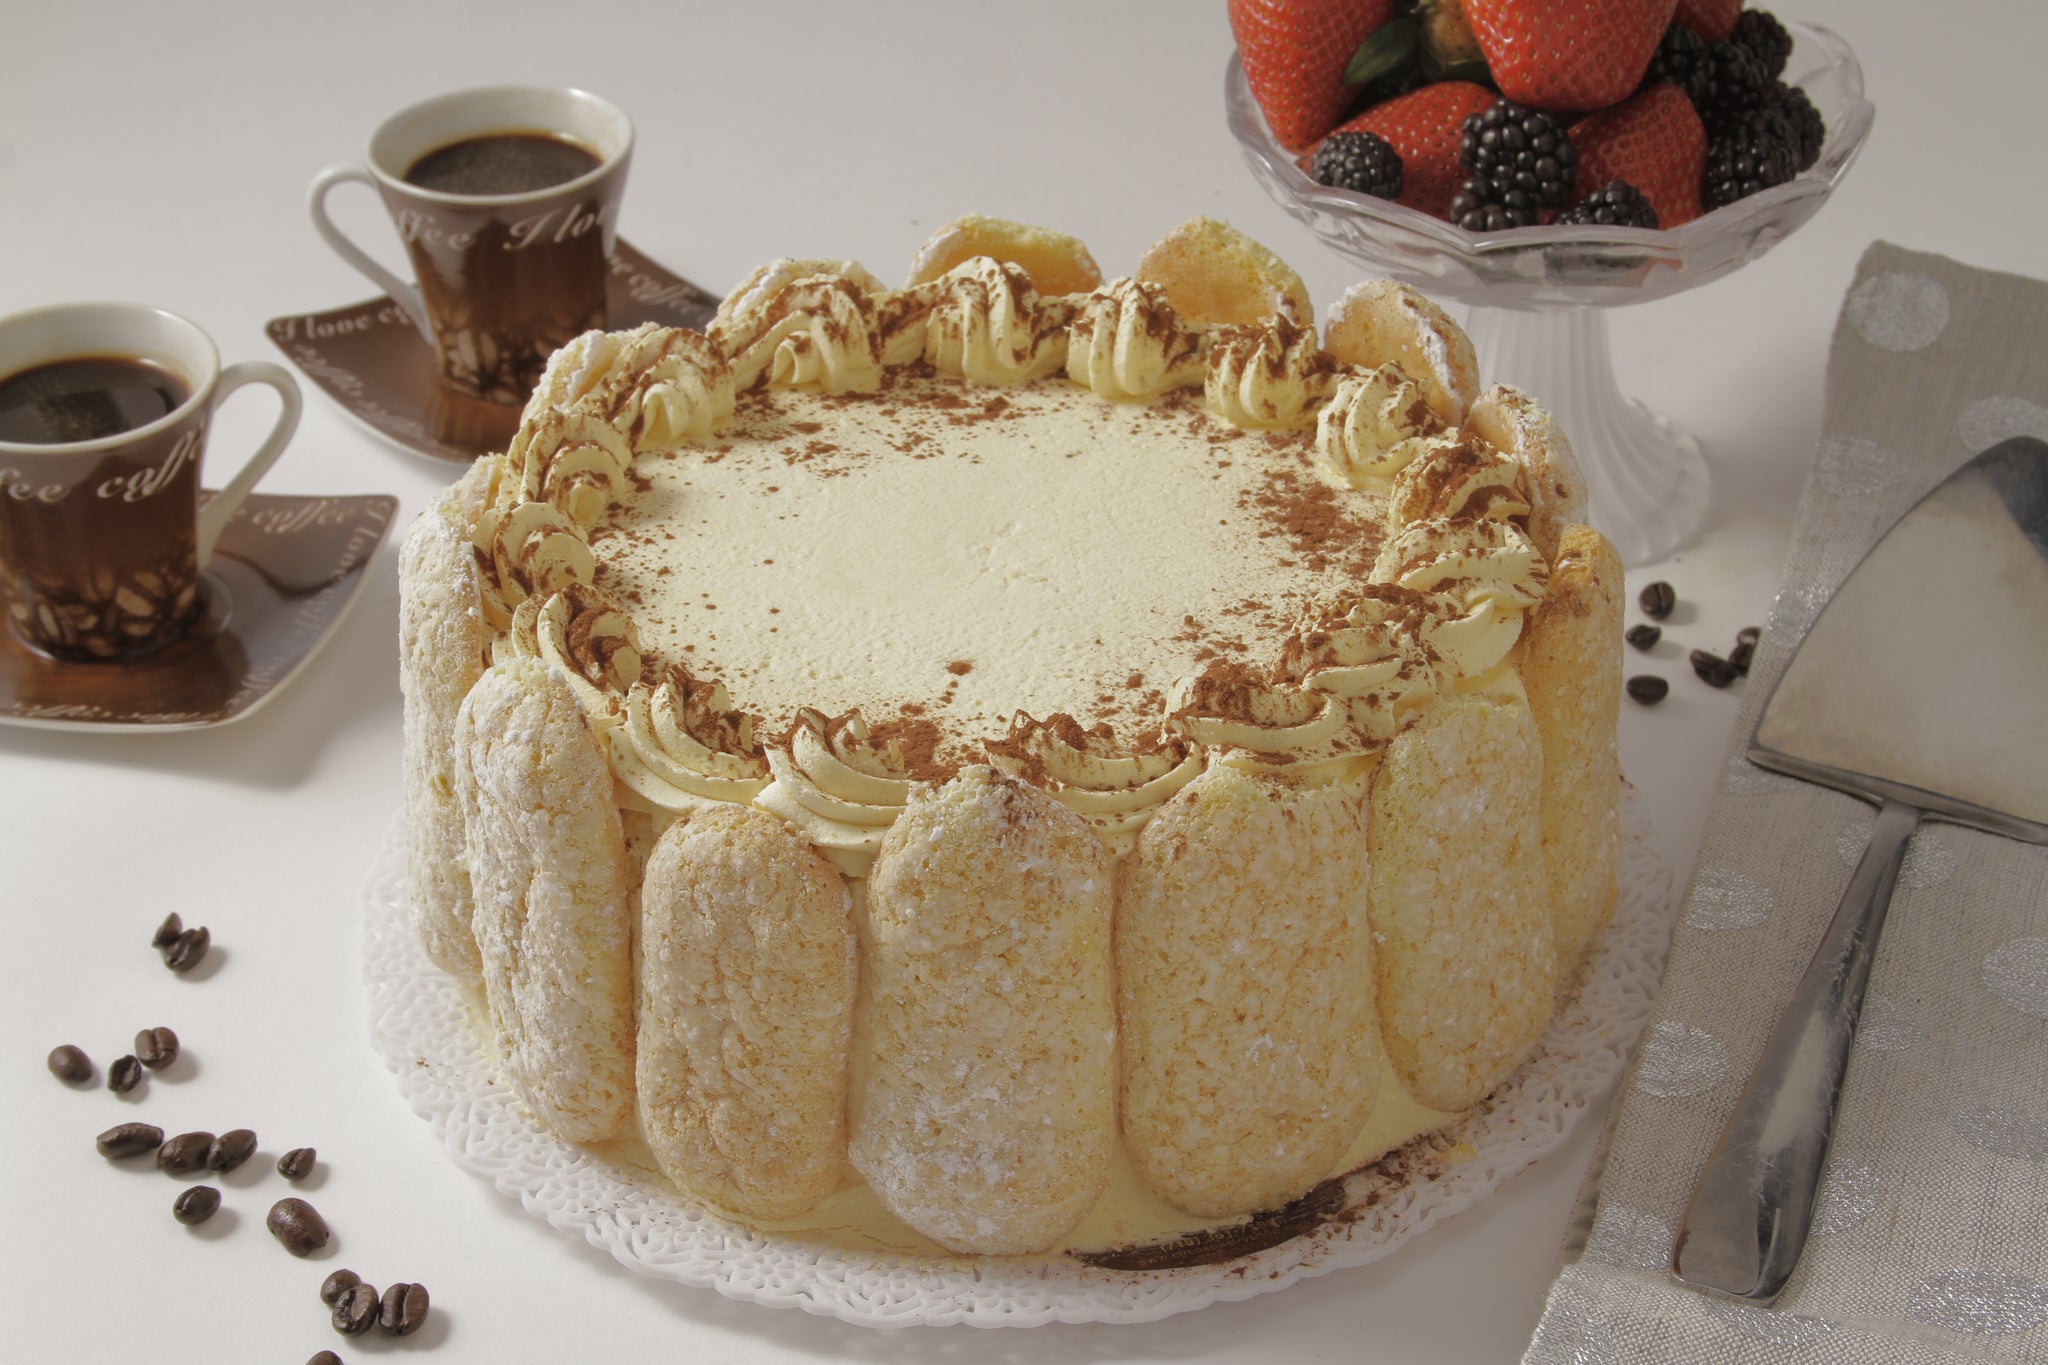 Buy Tiramisu Cake One Slice Online - Shop Bakery on Carrefour UAE